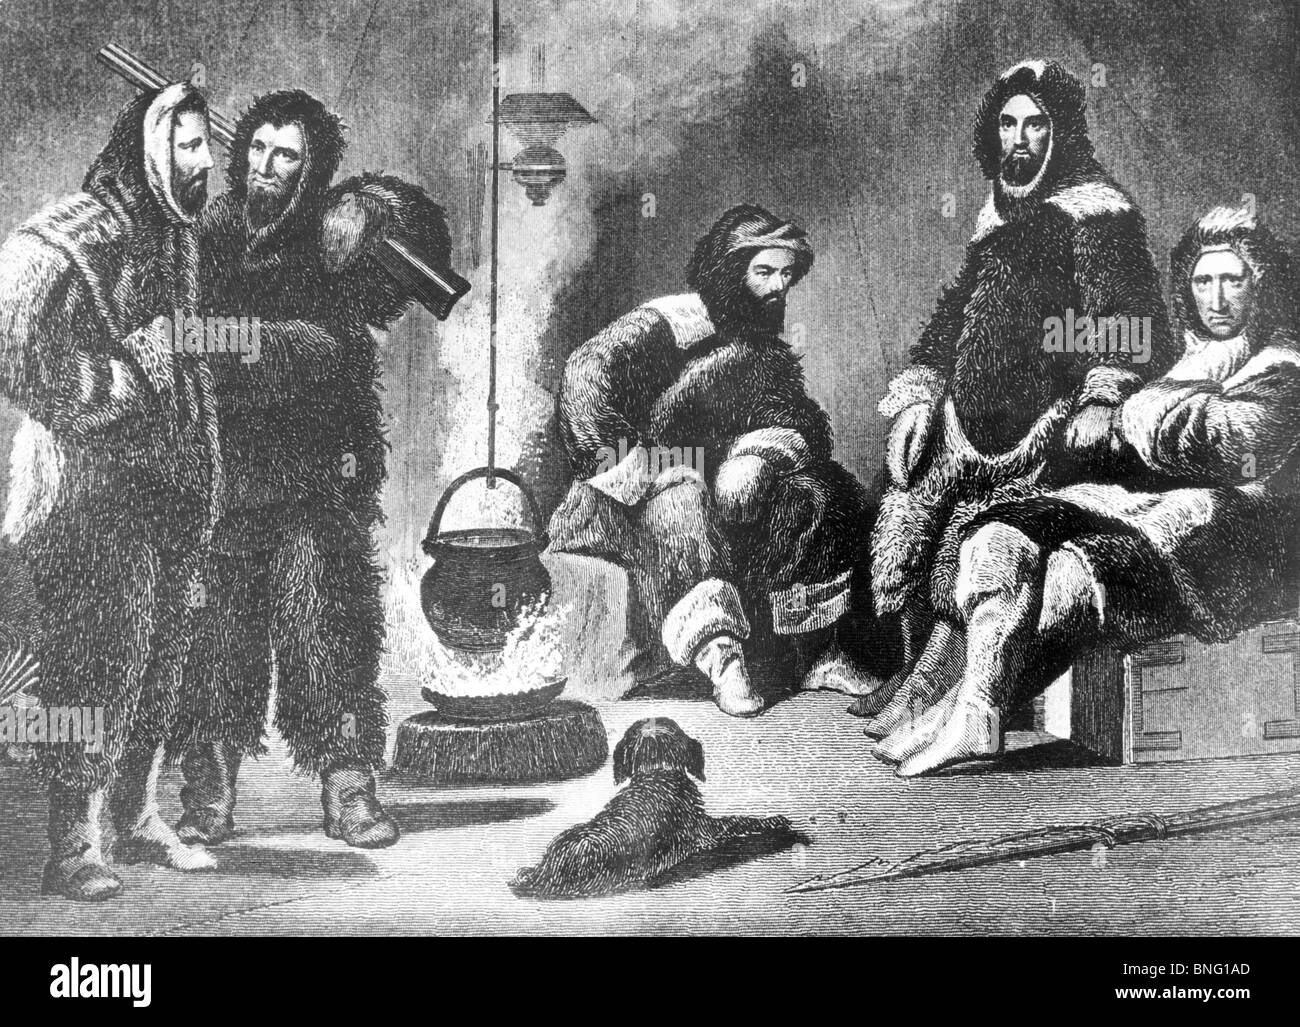 La seconda spedizione Grinnell nel loro trimestri invernali (dott. Kane è la terza da sinistra) Di artista sconosciuto, 1853 Foto Stock